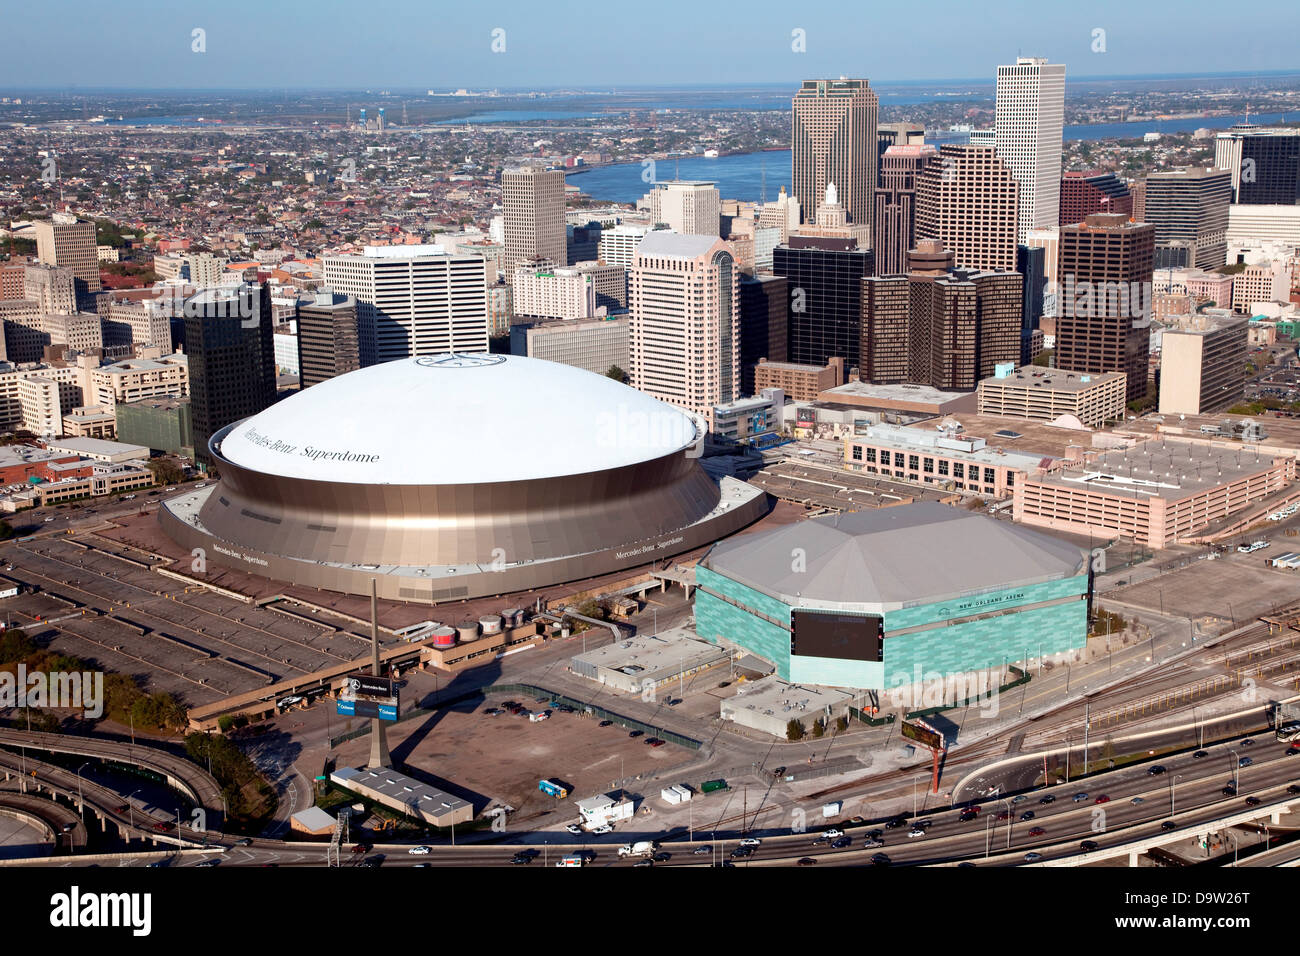 Die Innenstadt Von New Orleans Louisiana Aus Der Vogelperspektive Mit Dem Mercedes Benz Superdome Und New Orleans Arena Im Vordergrund Stockfotografie Alamy